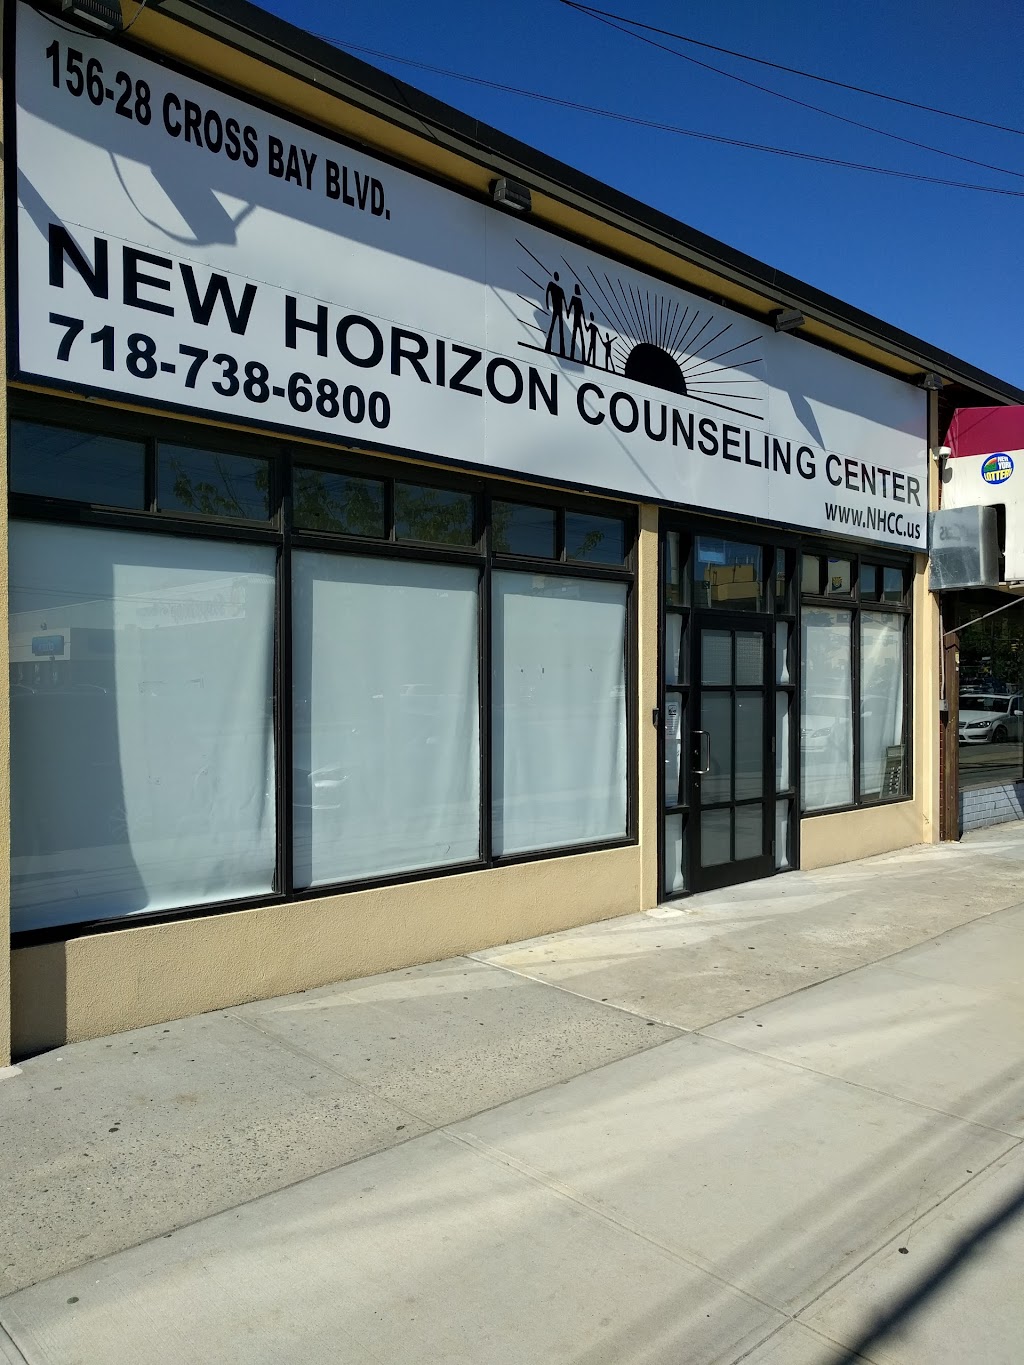 New Horizon Counseling Center | 156-28 Cross Bay Blvd, Howard Beach, NY 11414, USA | Phone: (718) 738-6800